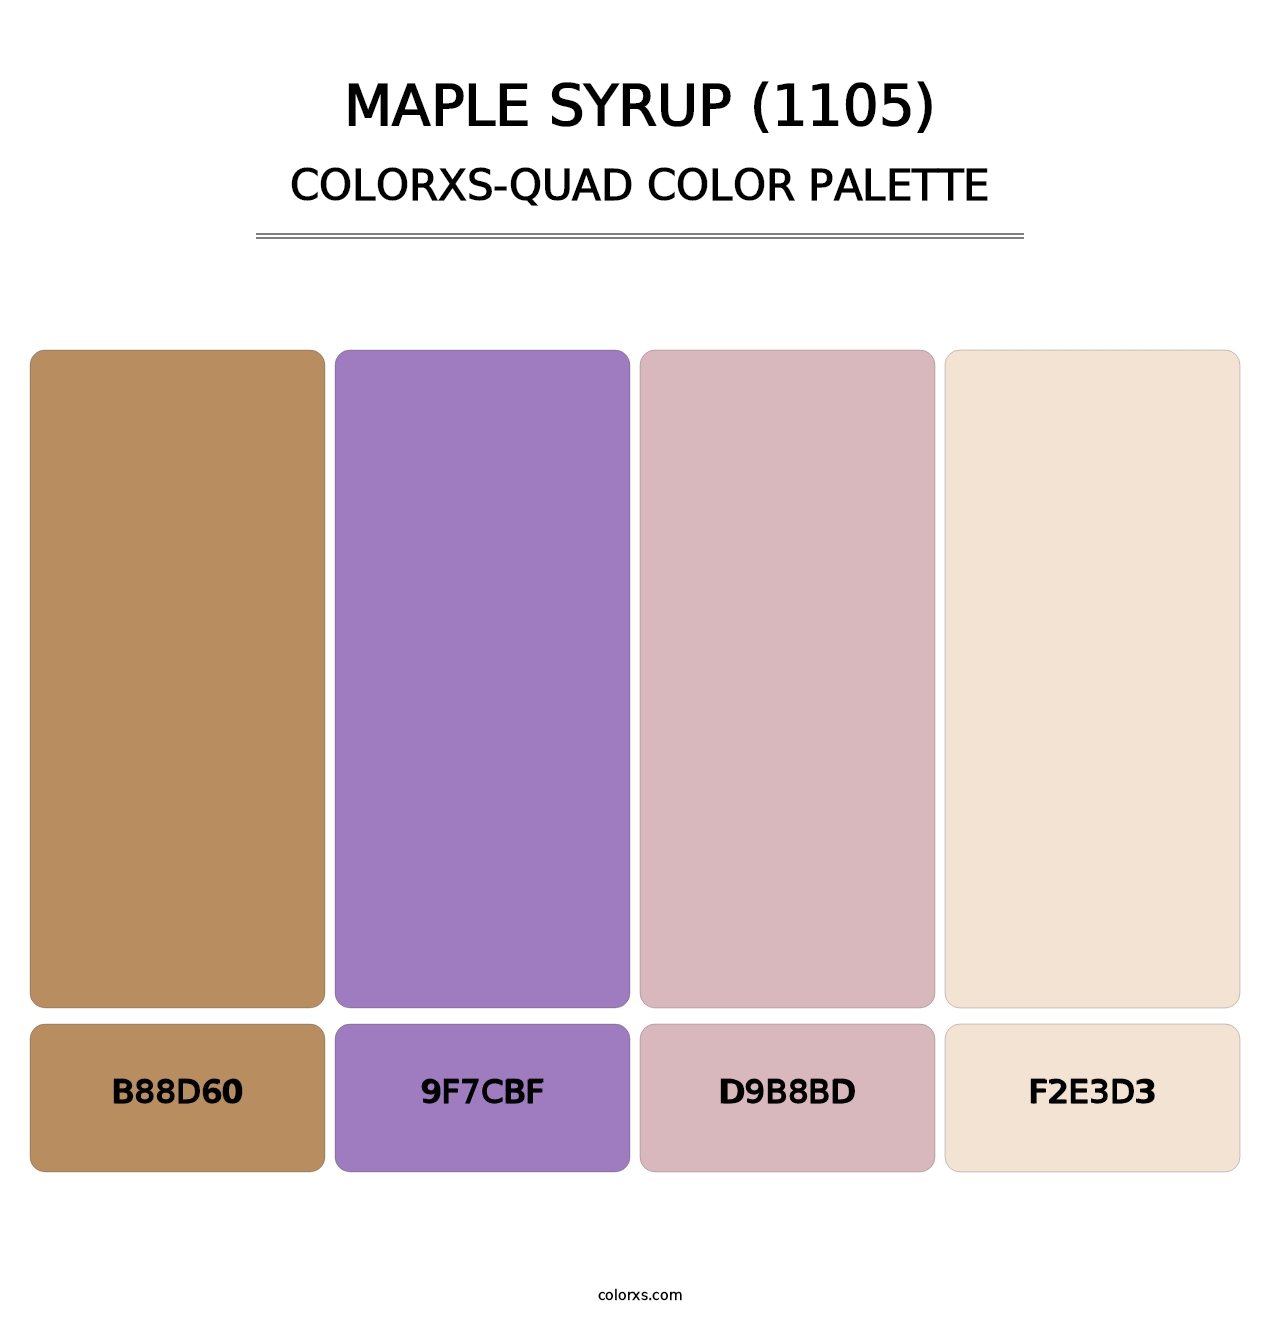 Maple Syrup (1105) - Colorxs Quad Palette